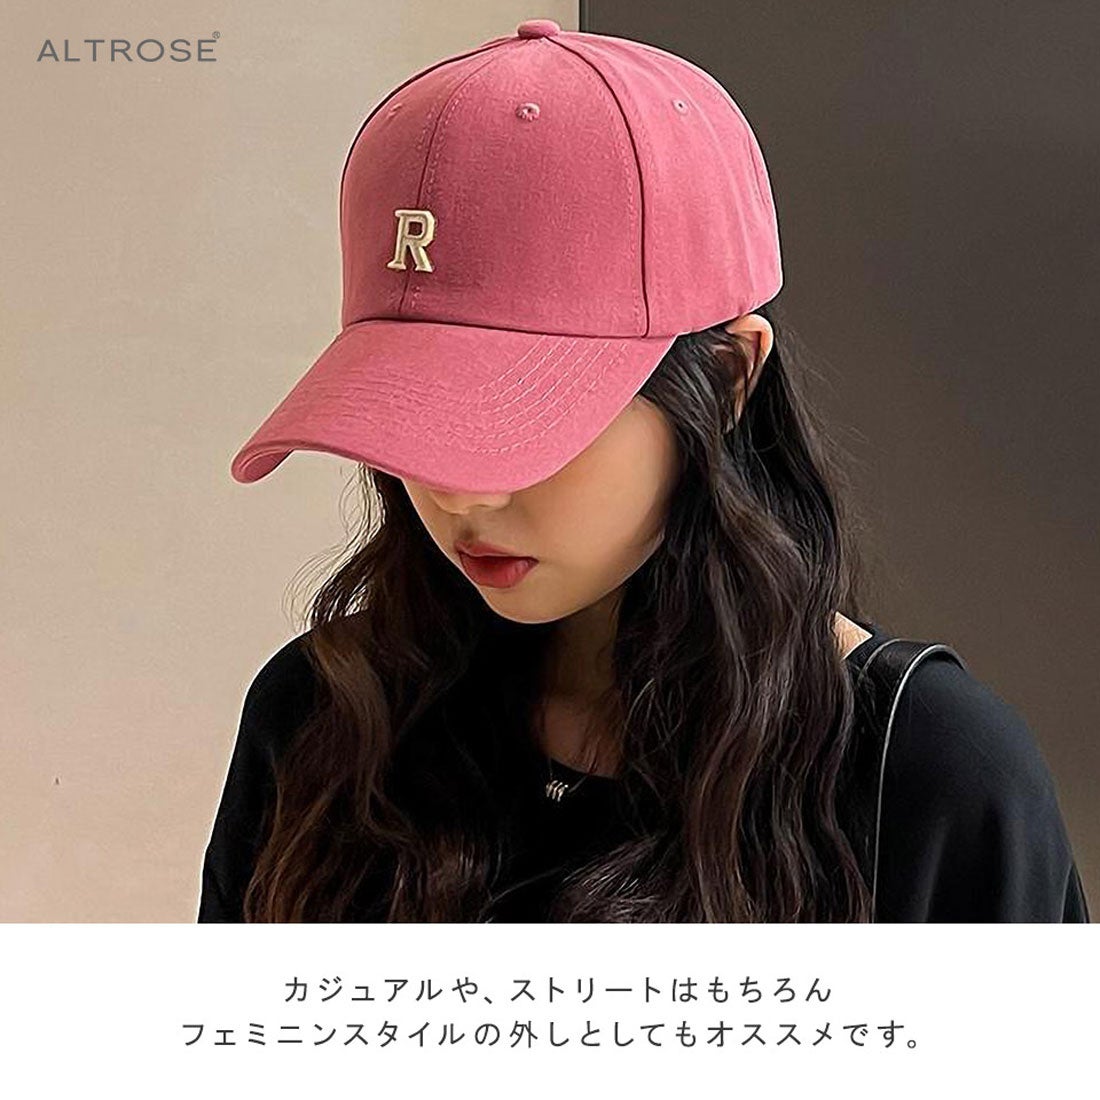 アルトローズ ALTROSE ハット 帽子 ロゴ ワンポイント シンプル 無地 R